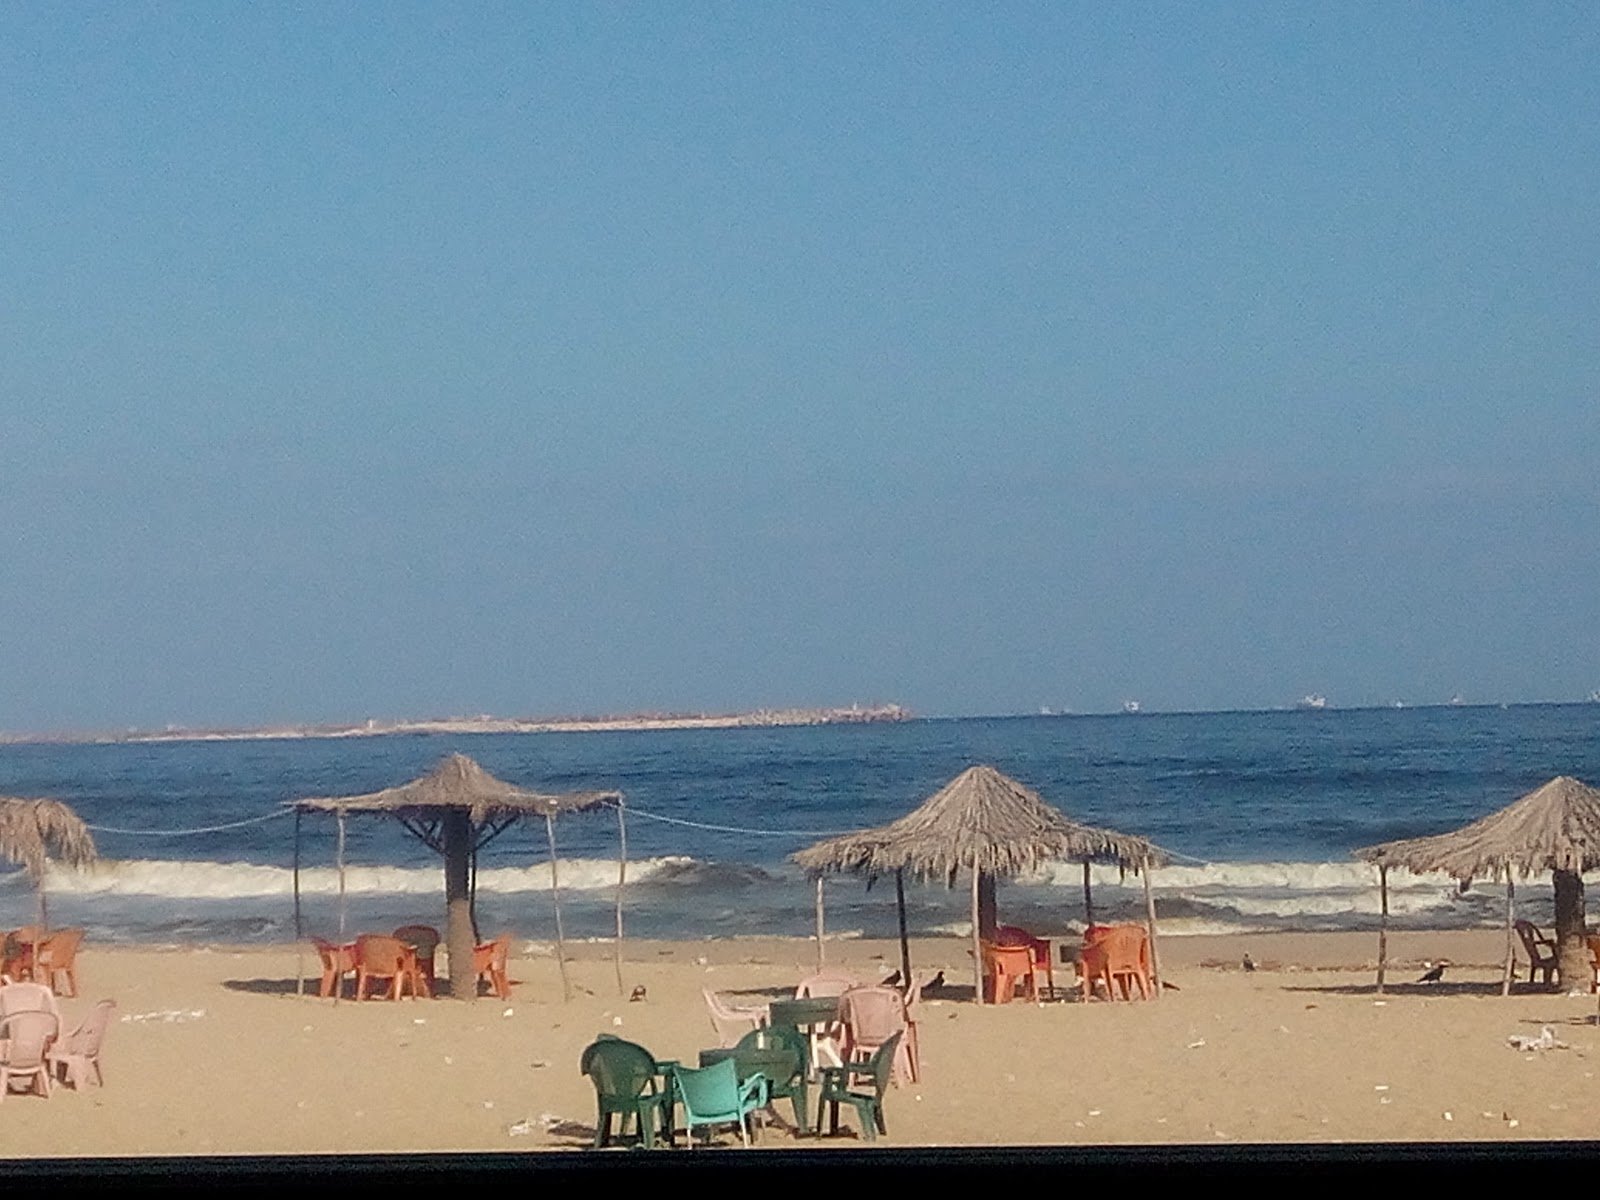 Foto de El Nakheel Free Beach área de complejo turístico de playa